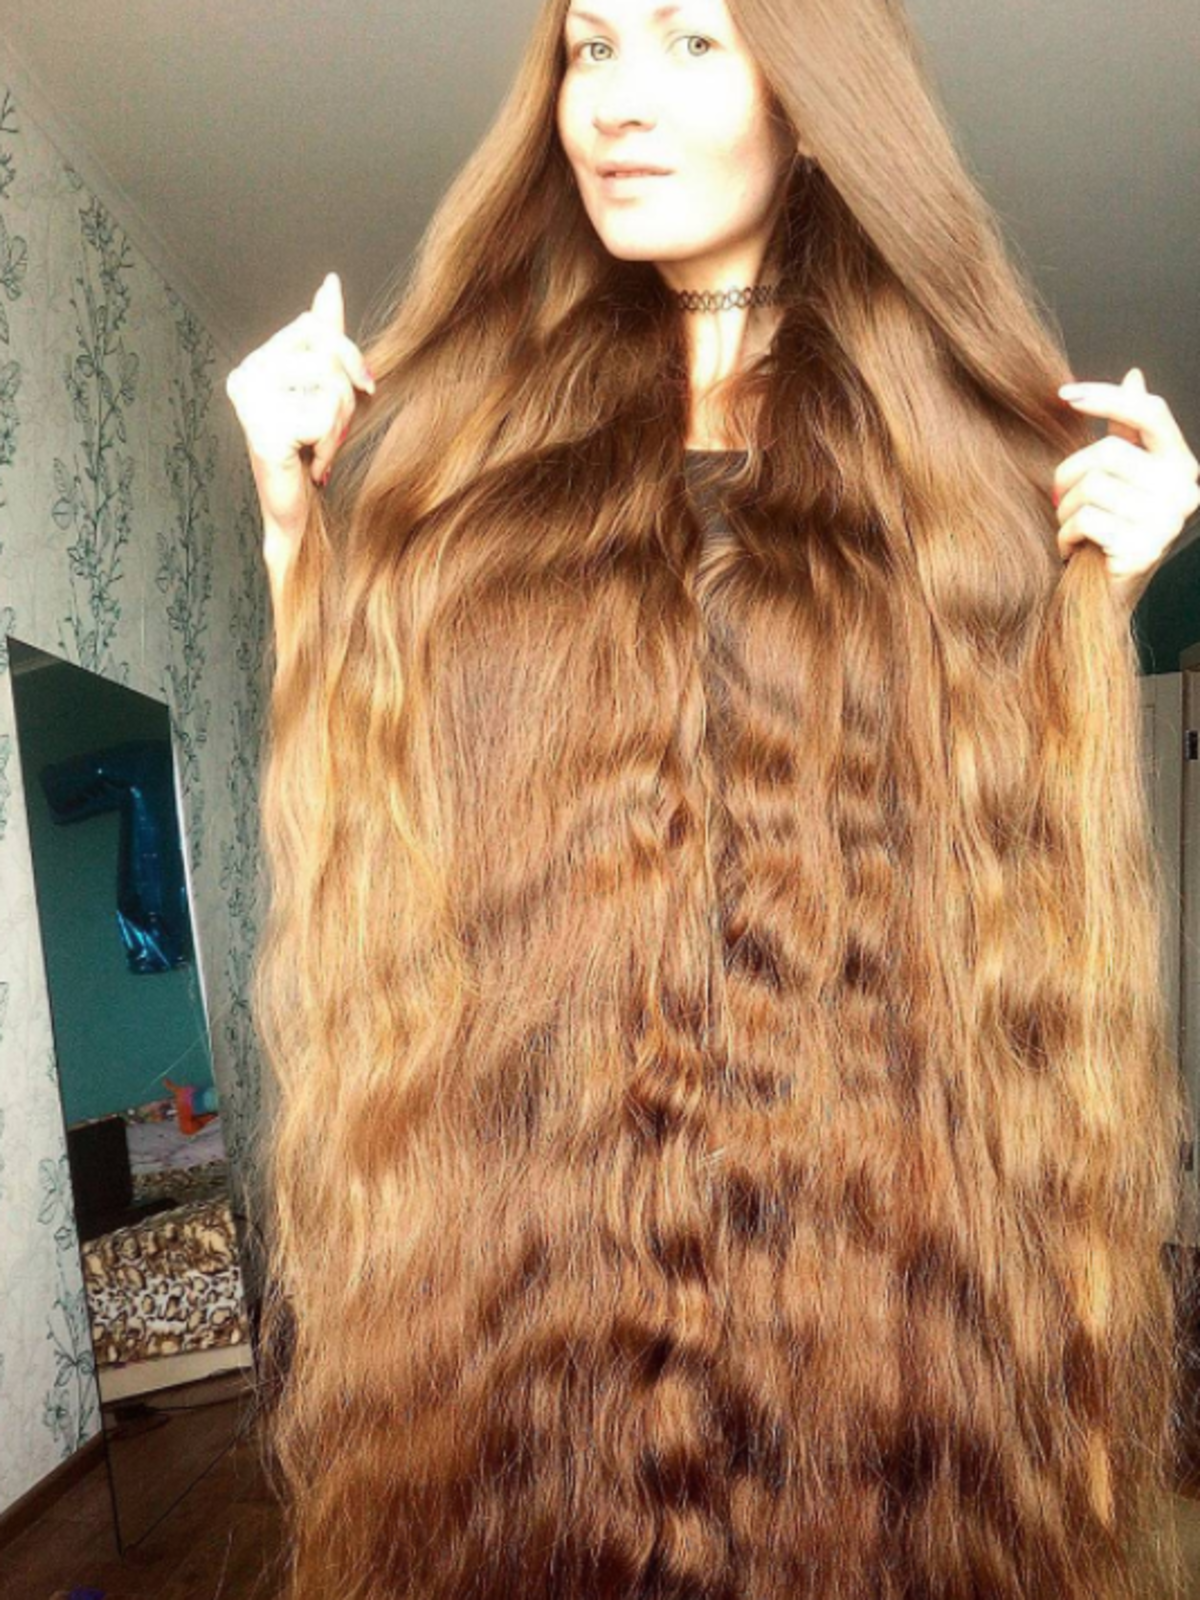 Rosyjska Roszpunka - ta dziewczyna od 14 lat nie obcina włosów